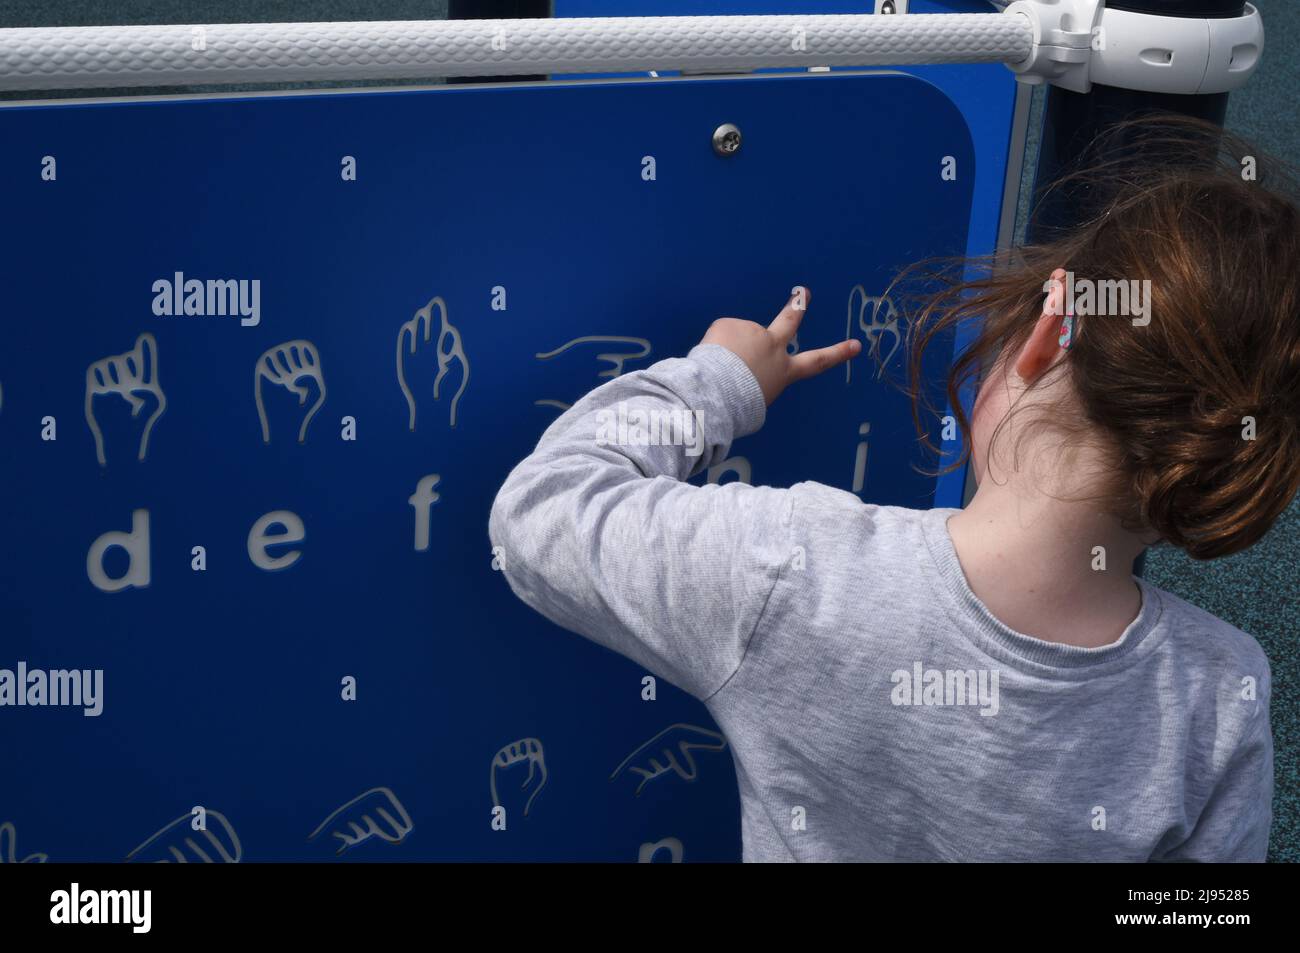 Una giovane ragazza guarda un grafico di linguaggio dei segni in un parco giochi a Edmonton, Alberta, Canada Foto Stock